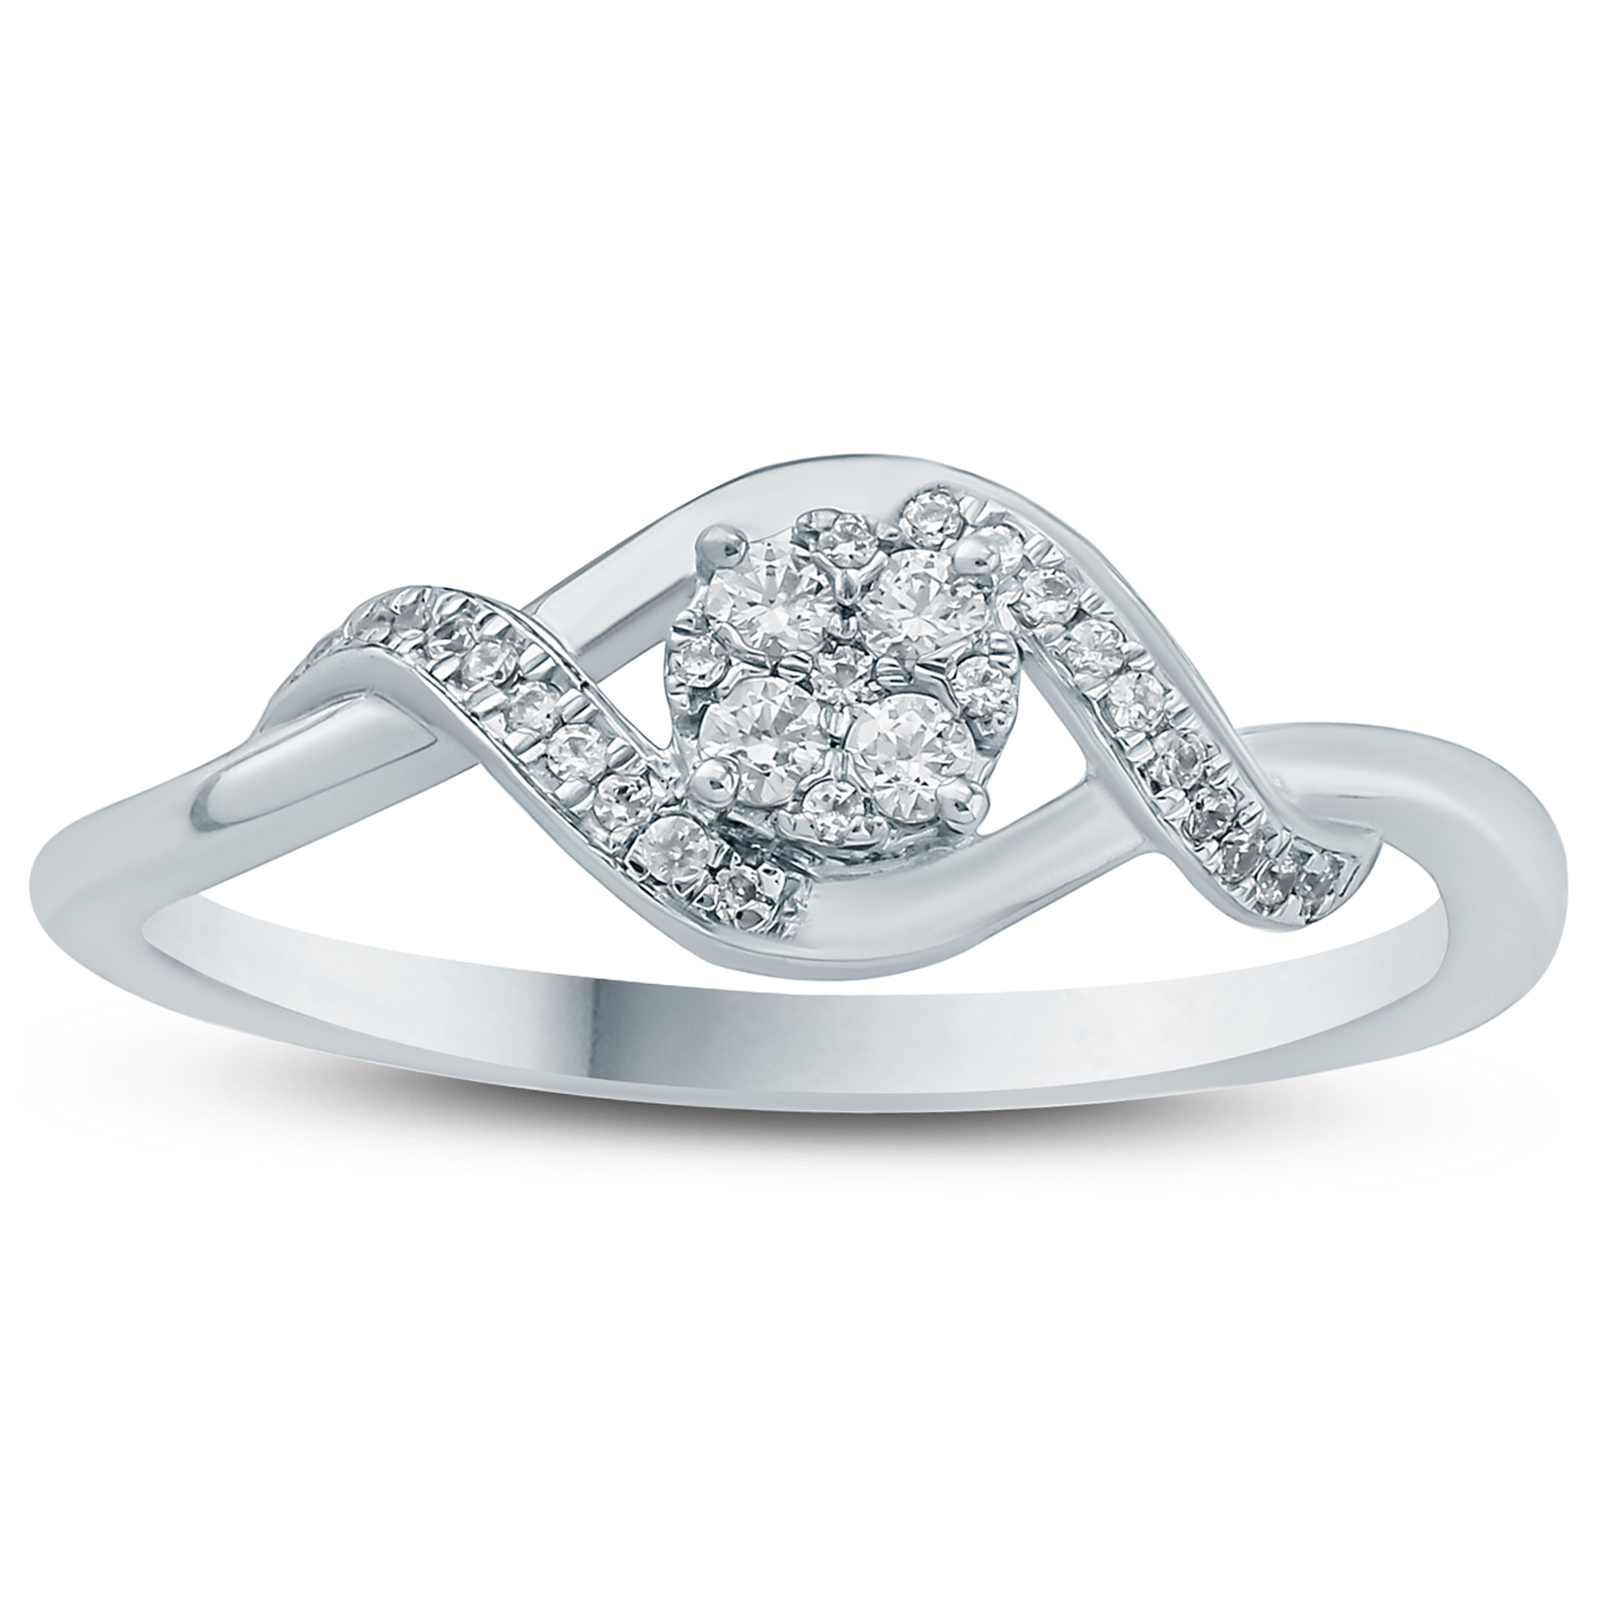 1/8 Carat TW Diamond Fashion Ring in 10K White Gold